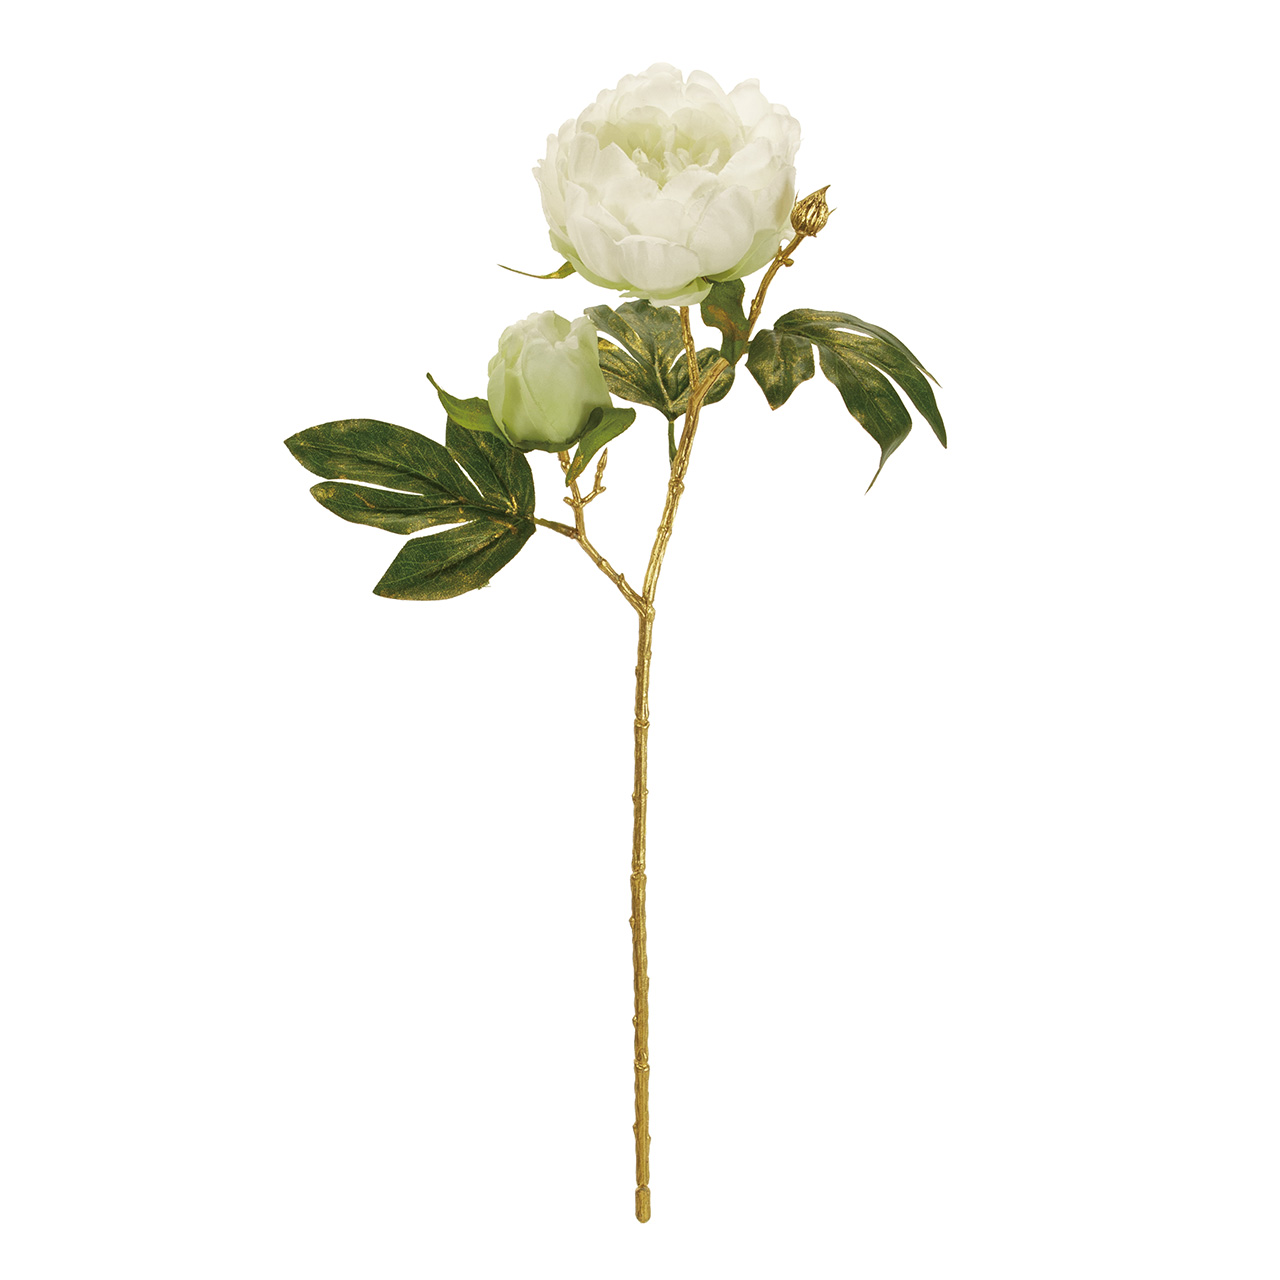 マイフラ 通販 Magiq デコーレピオニー クリーム アーティフィシャルフラワー 造花 ピオニー 牡丹 Fj 001 クリーム Magiq アーティフィシャルフラワー 造花 全国にmagiq 花器 花資材などをお届けします